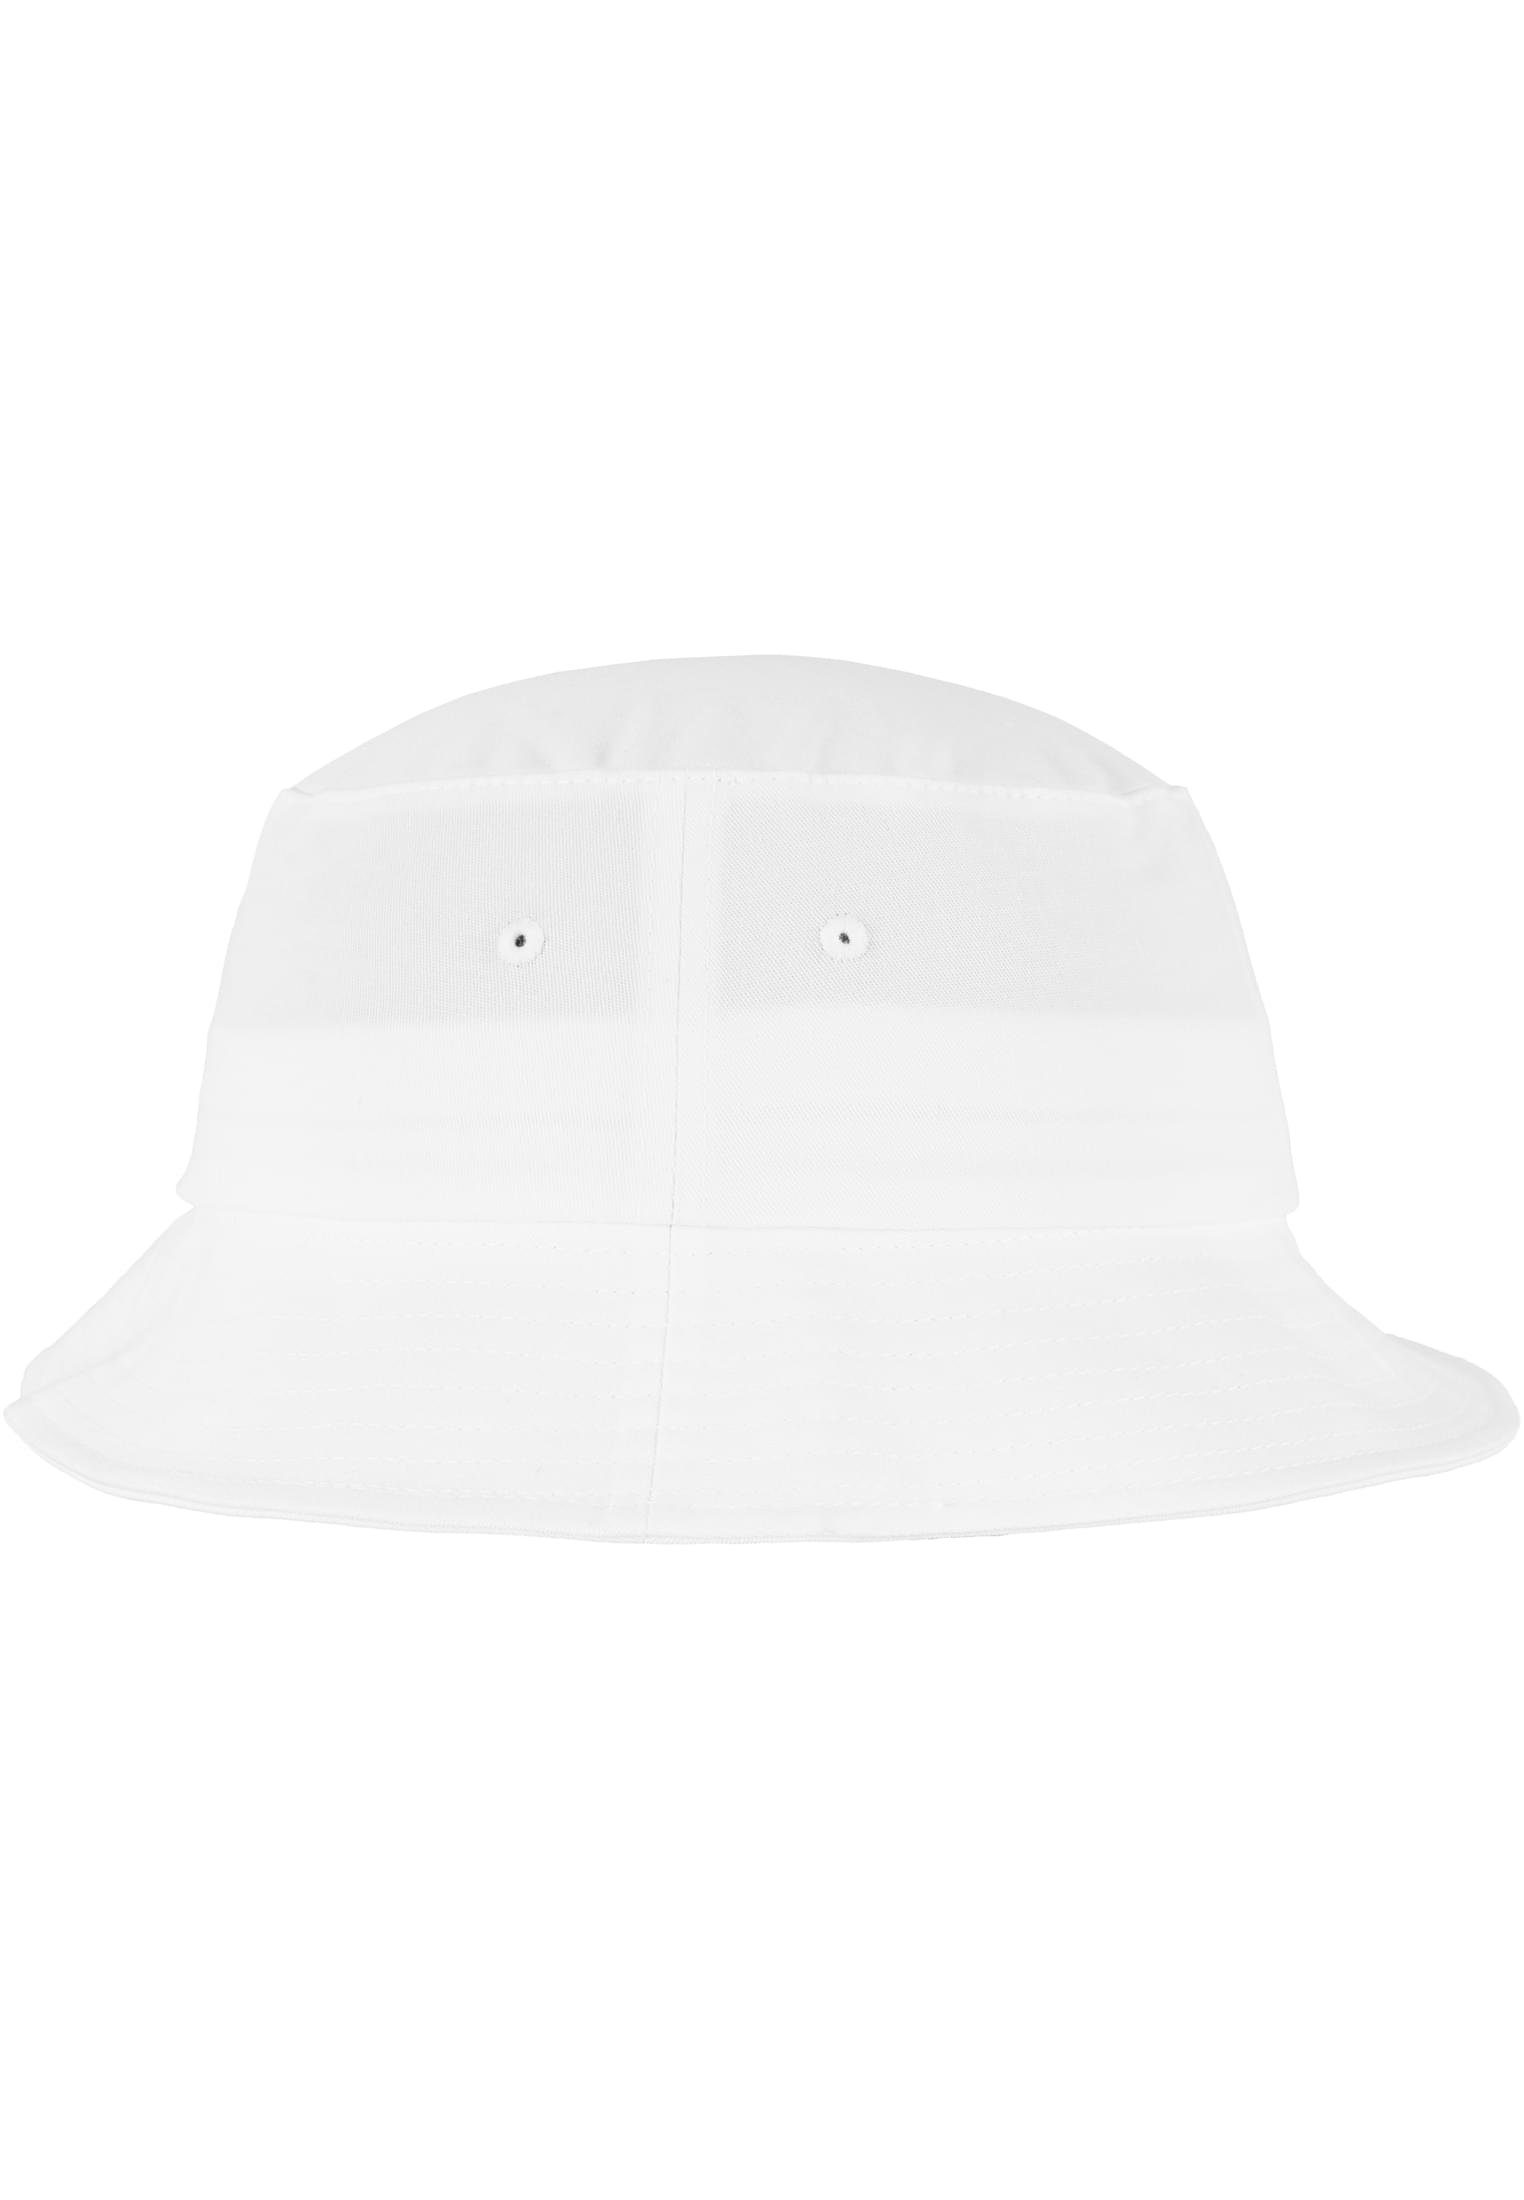 Hat Cotton Bucket white Cap Flex Flexfit Twill Flexfit Accessoires